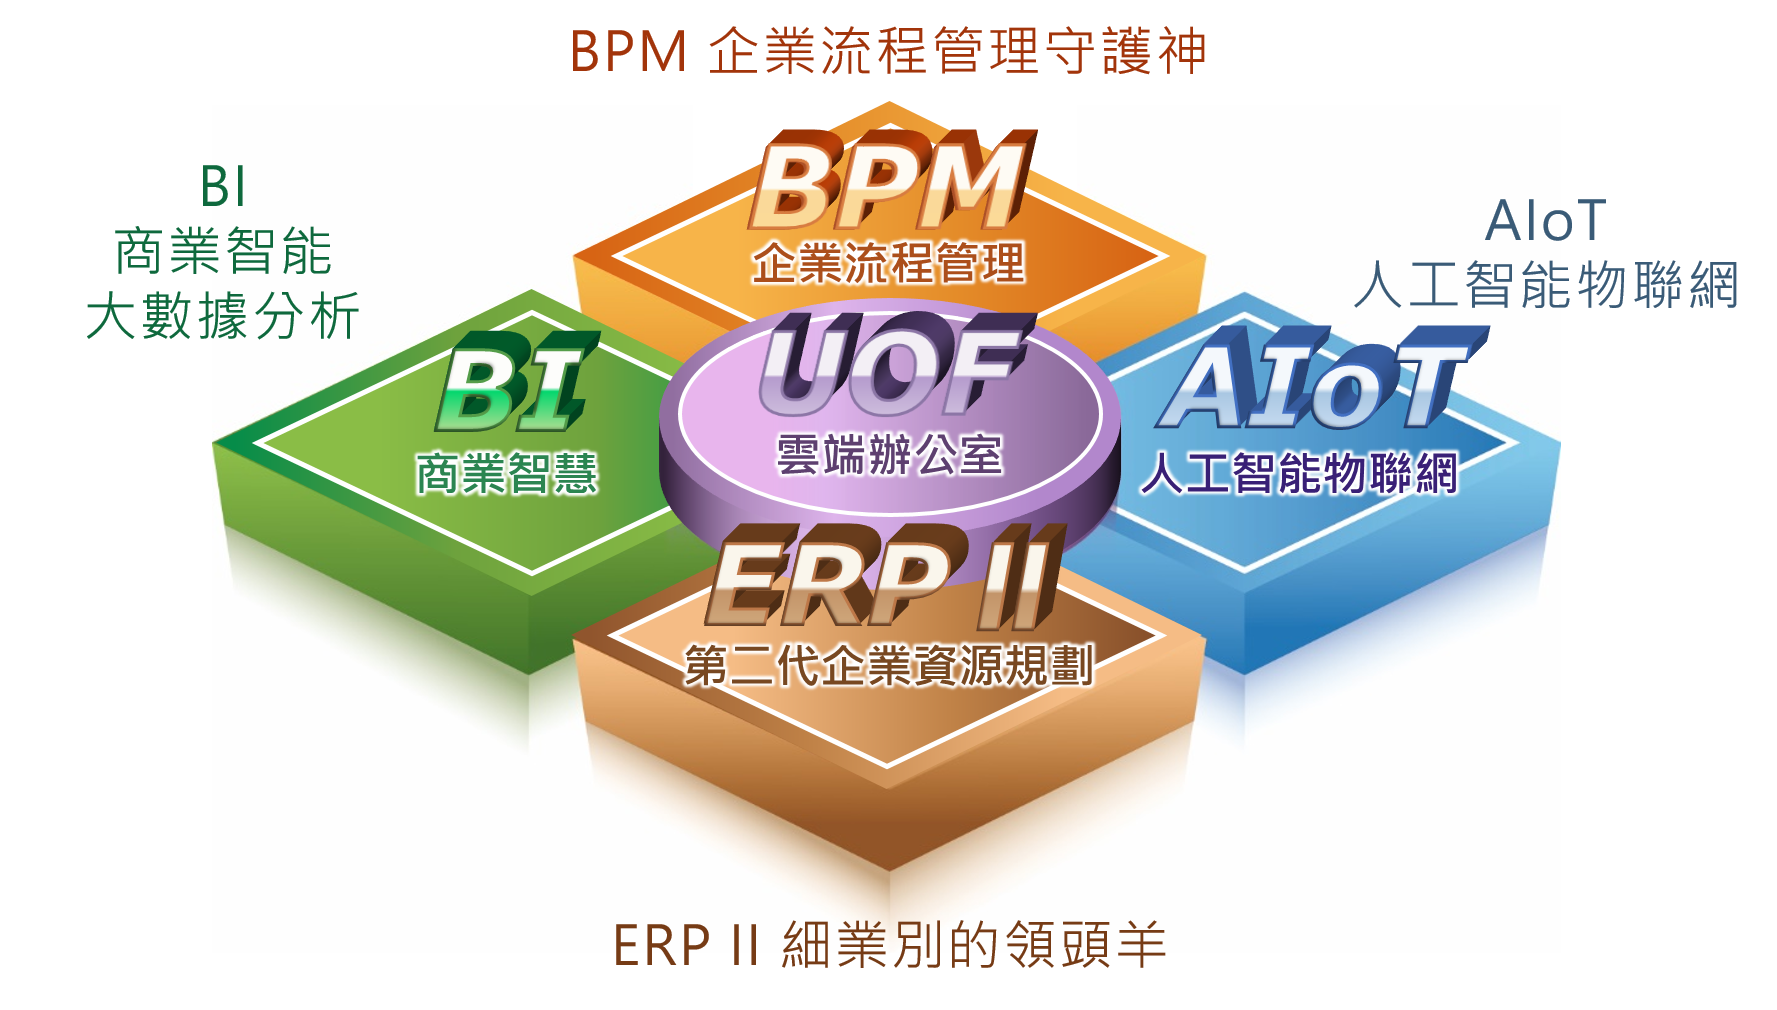 五大產品:BPM, BI, ERPII, IoT, UOF